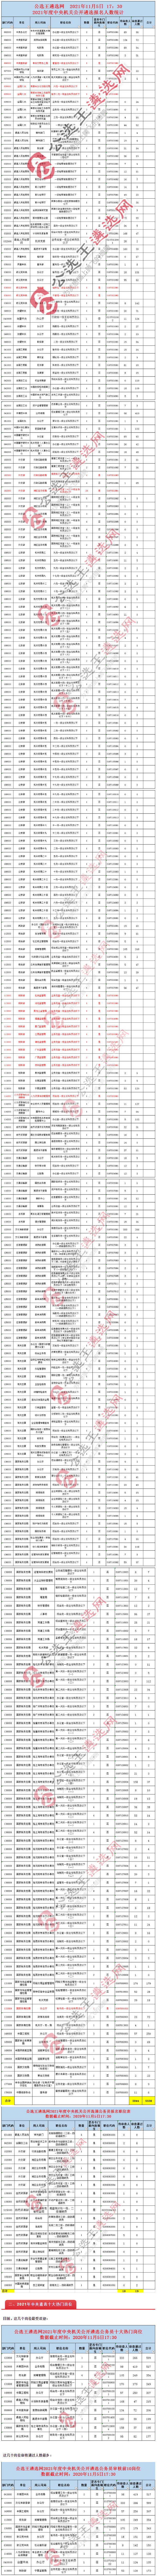 2021中央机关遴选报名数据11.5.jpg